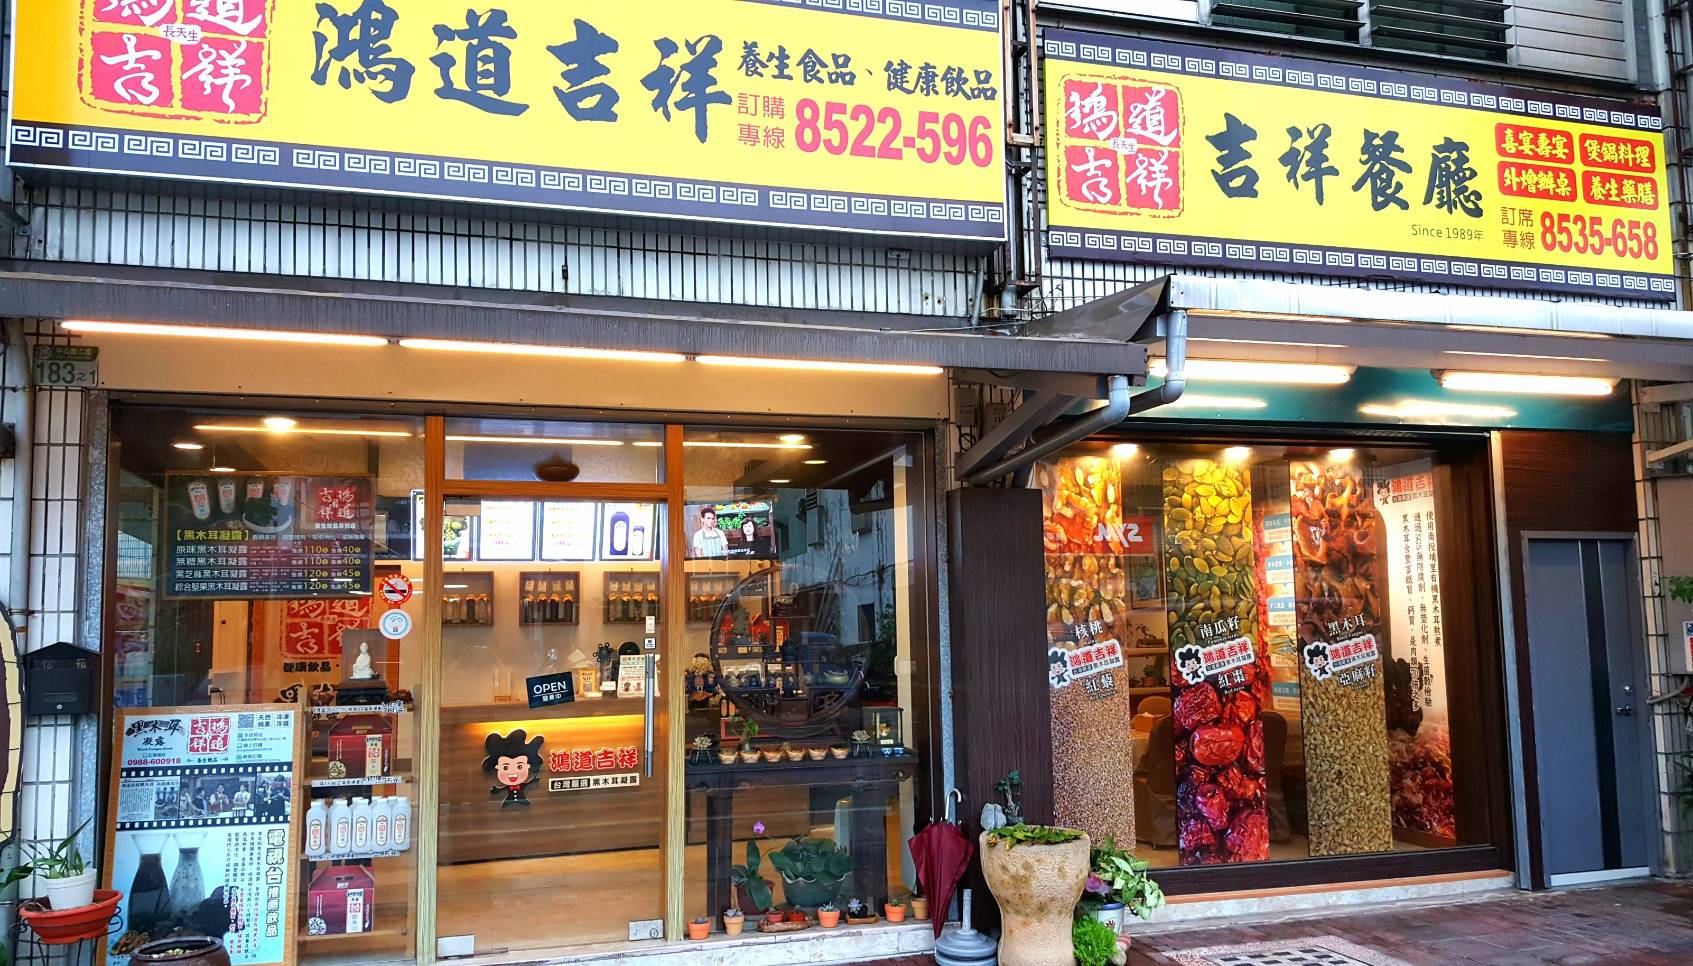 Hong Dao Ji Xiang Health Food Store